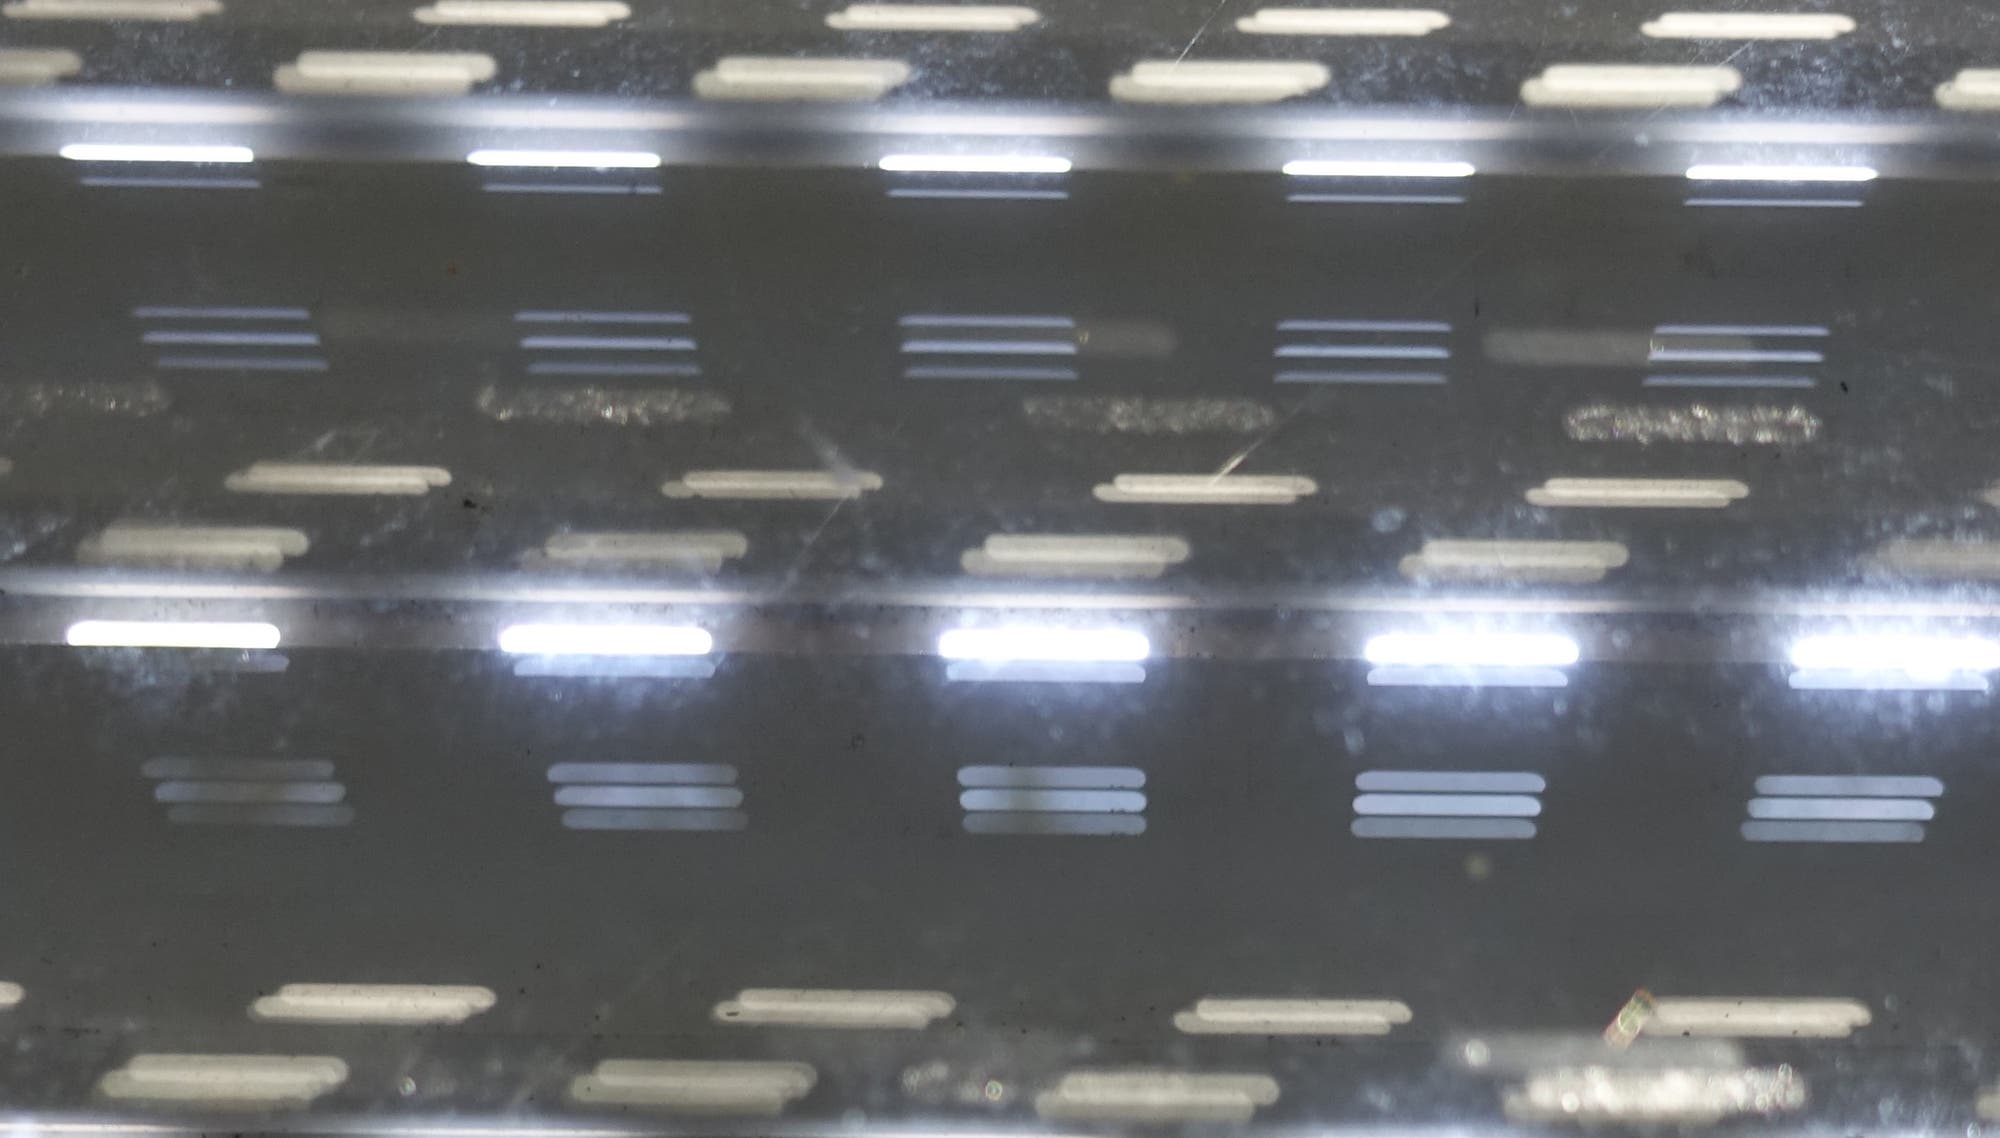 Die Öffnungen zwischen den Lamellen einer Jalousie werden von Licht durchstrahlt und erzeugen zahlreiche helle Streifen (Ausschnittsbild).